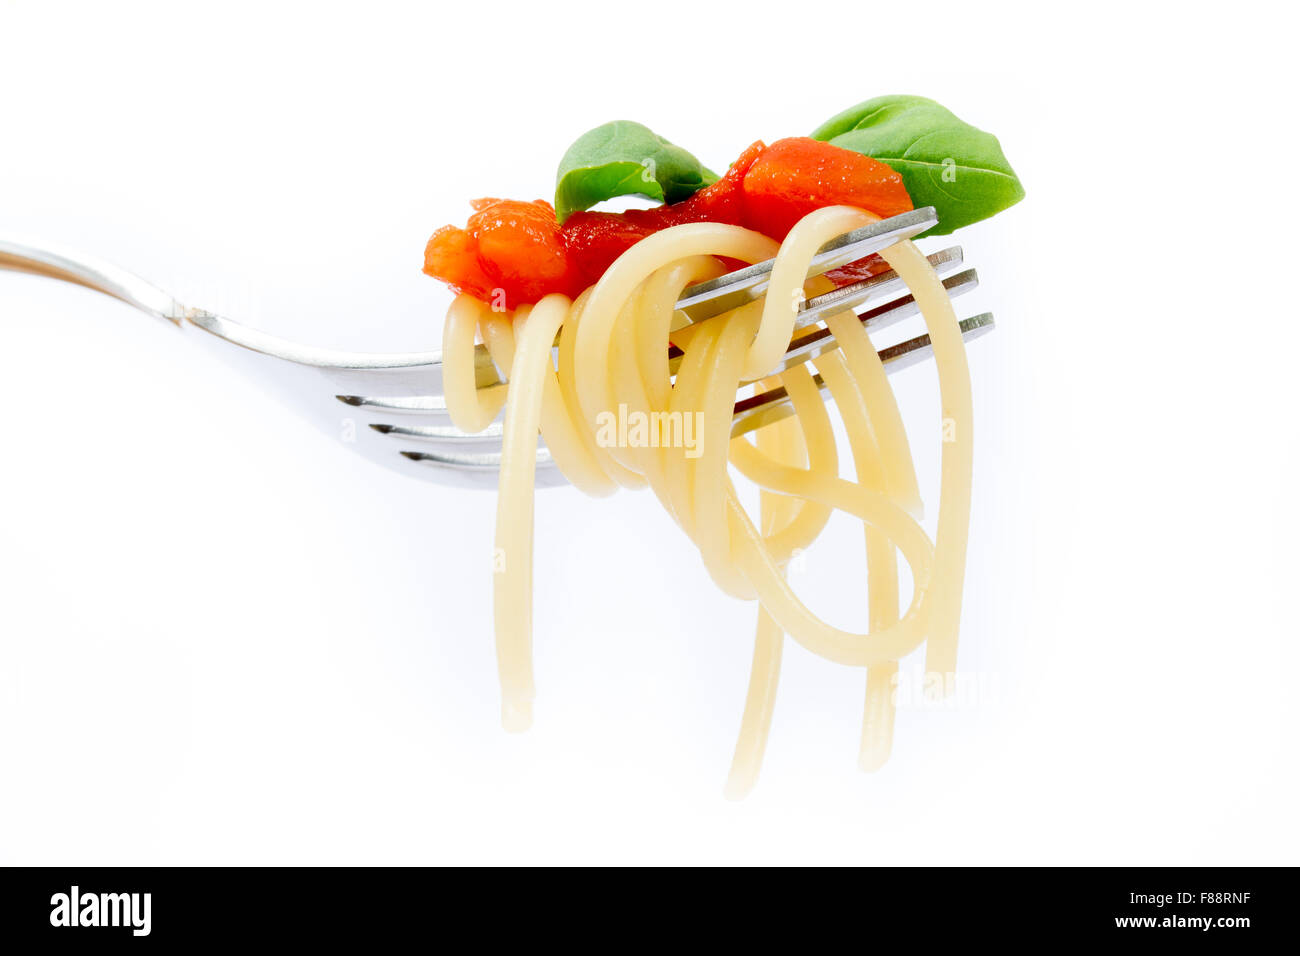 Isolated pasta on white background Stock Photo